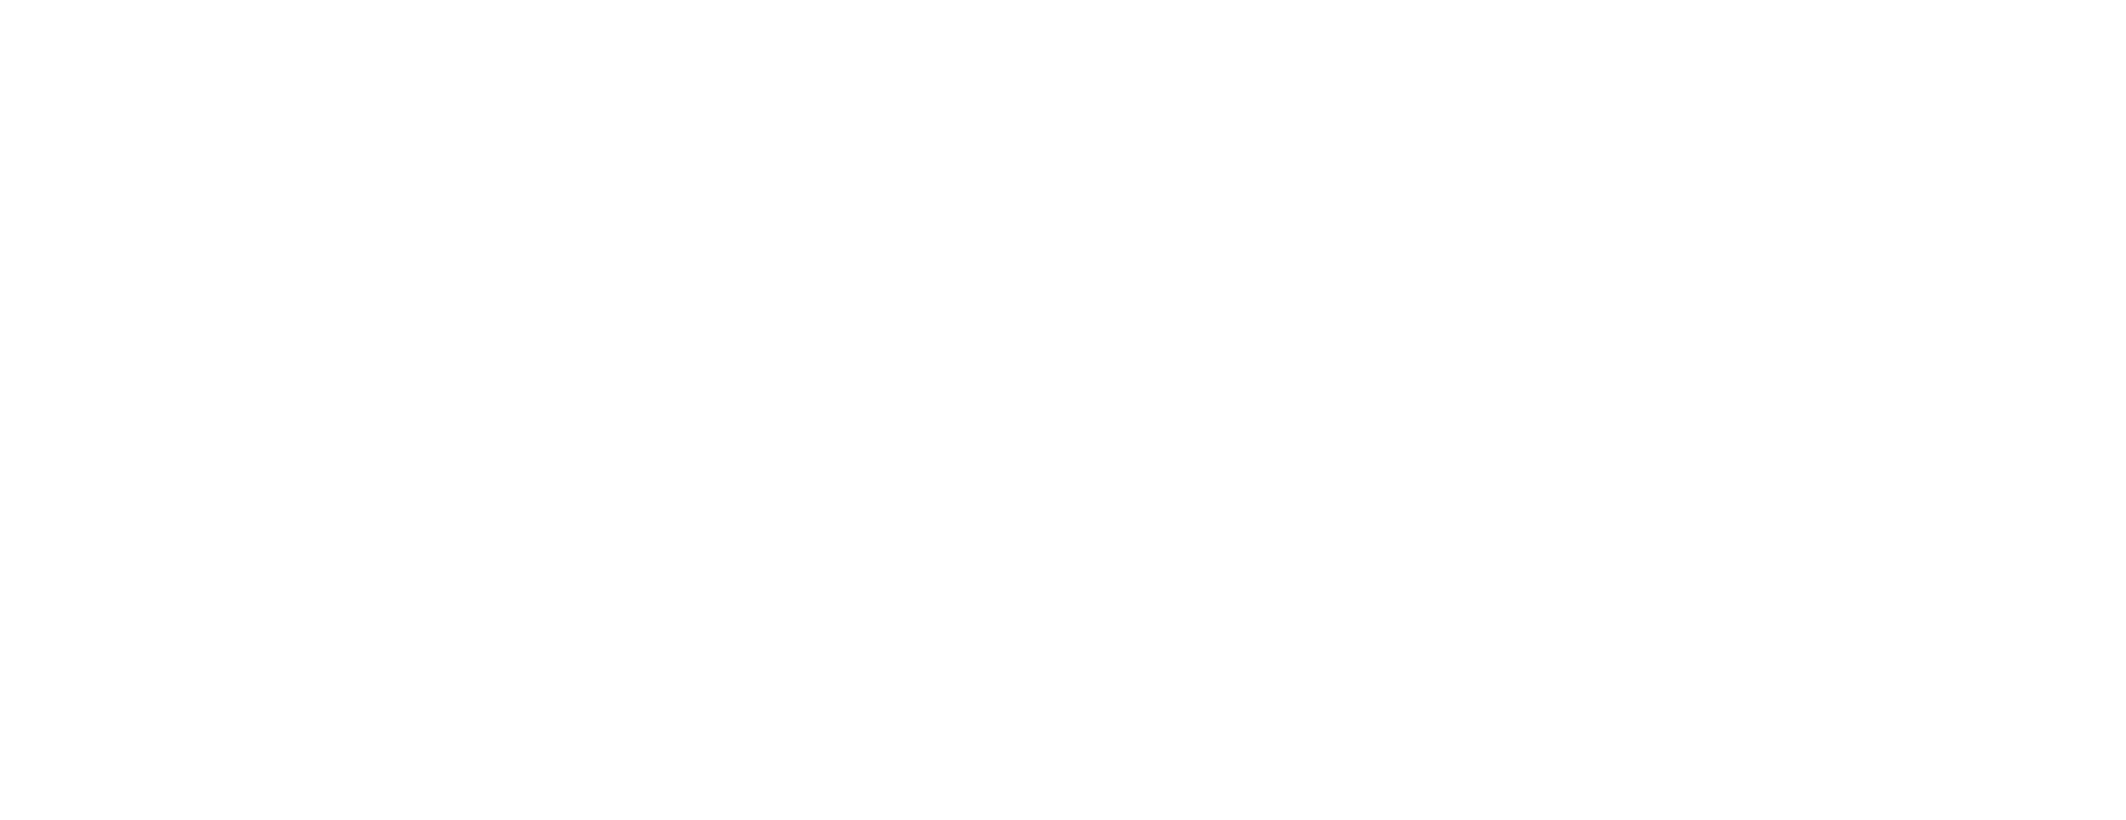 Kiika Skin